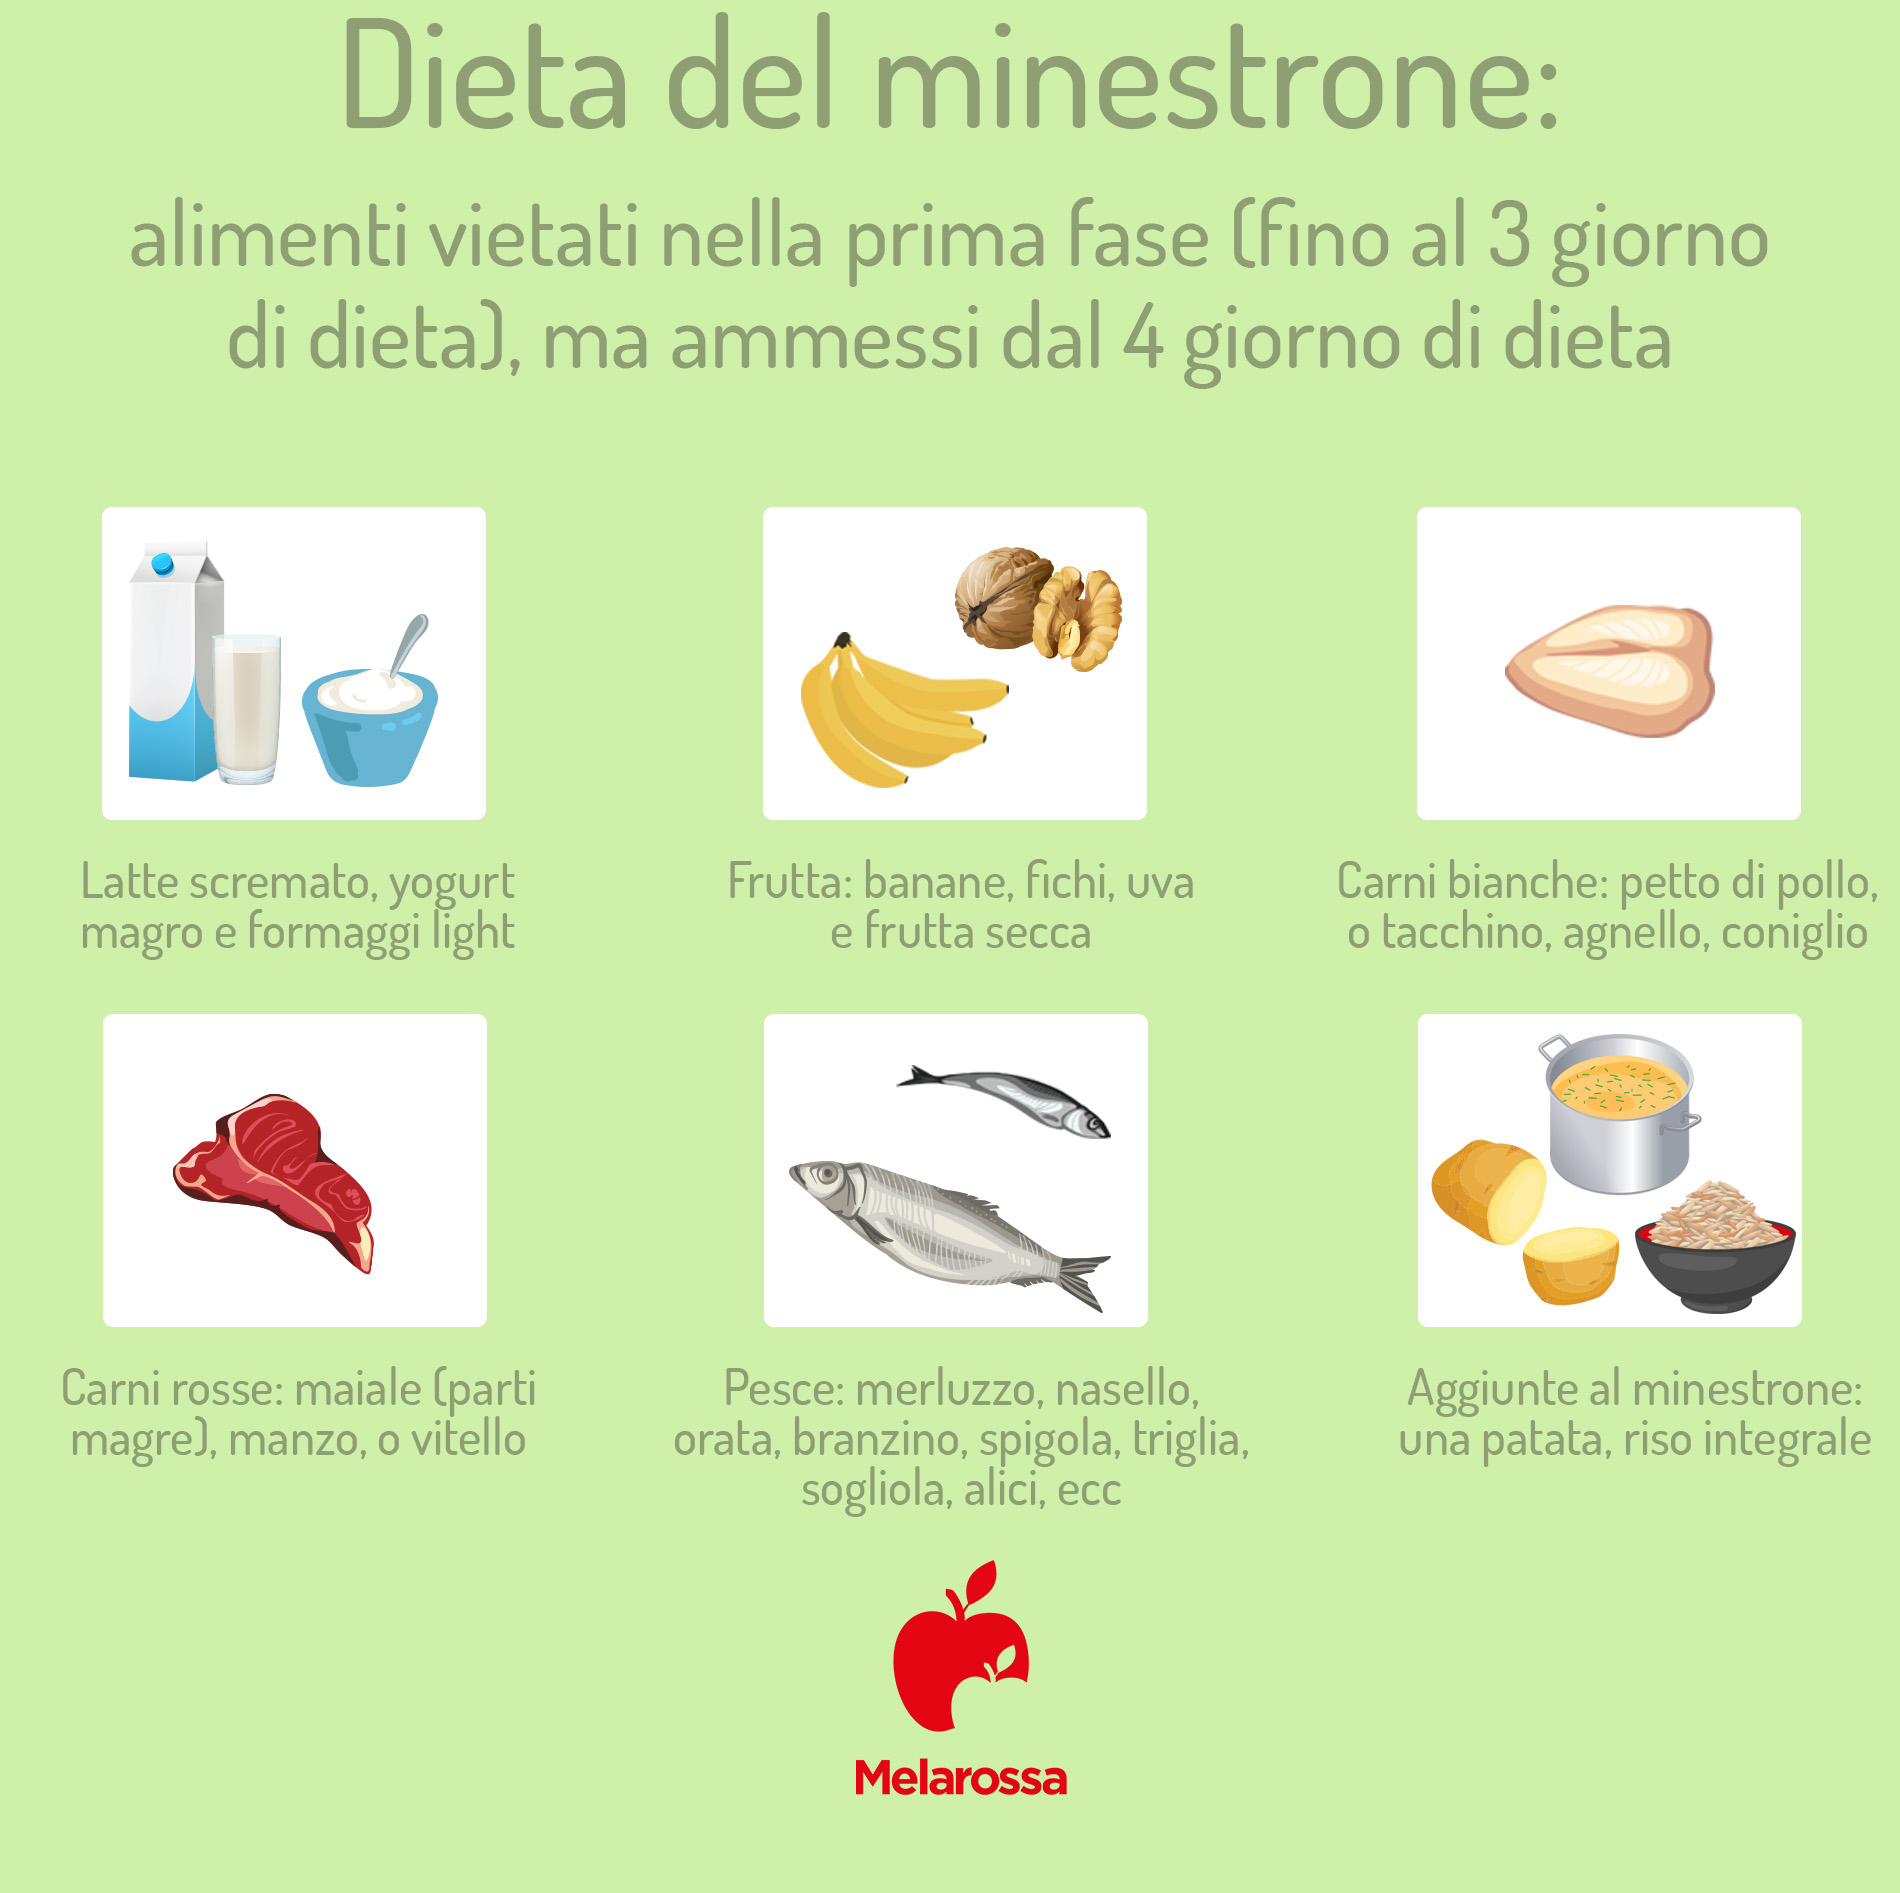 dieta del minestrone: alimenti vietati nella prima fase